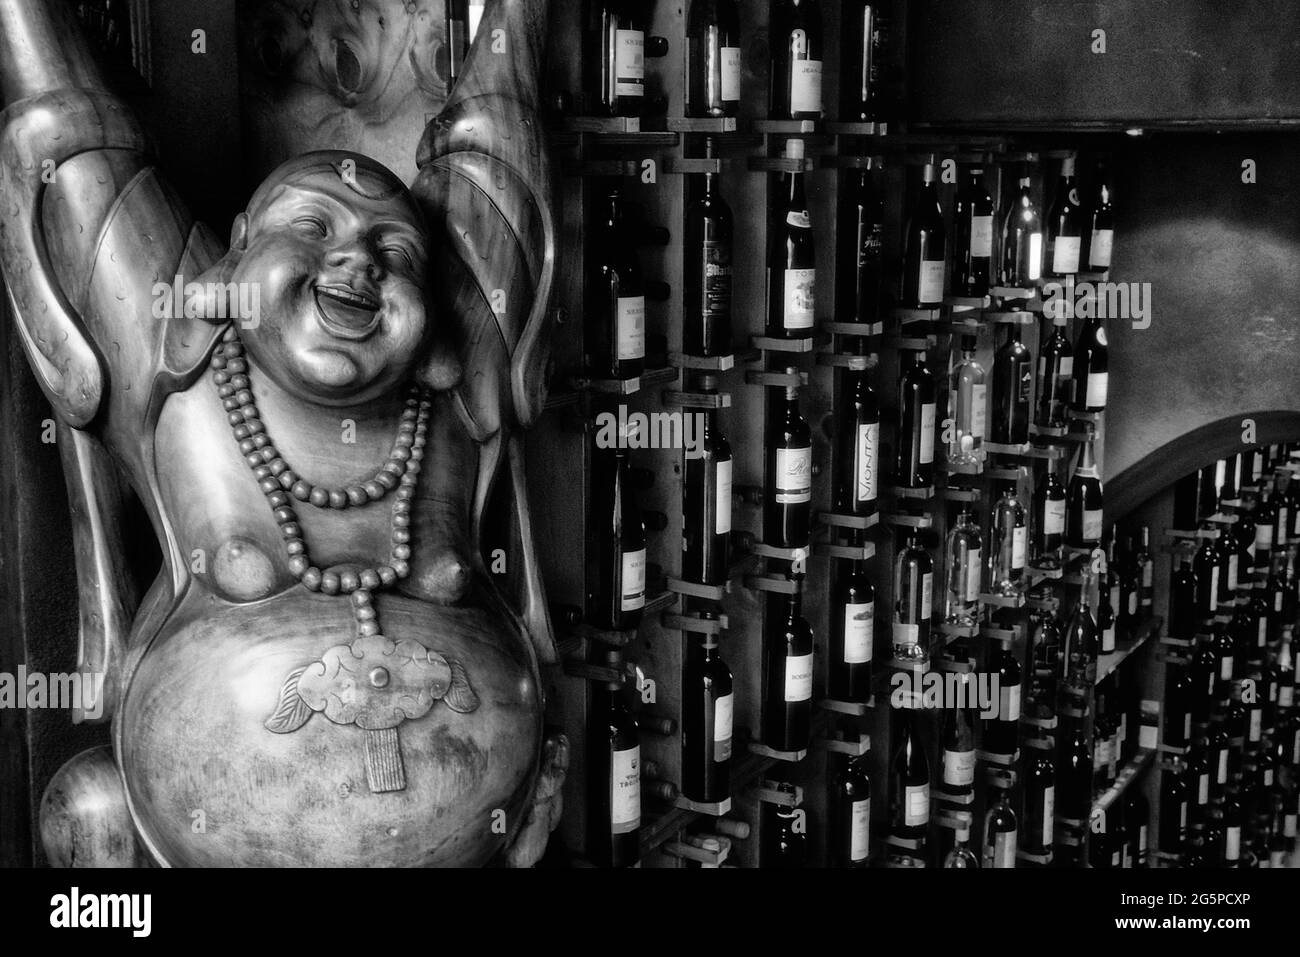 Una statuetta di Budai, in piedi con armi sollevate, SA Cova, enoteca, Valldemossa, regione Comarca, Serra de Tramuntana, Maiorca, Isole Baleari, Spagna Foto Stock